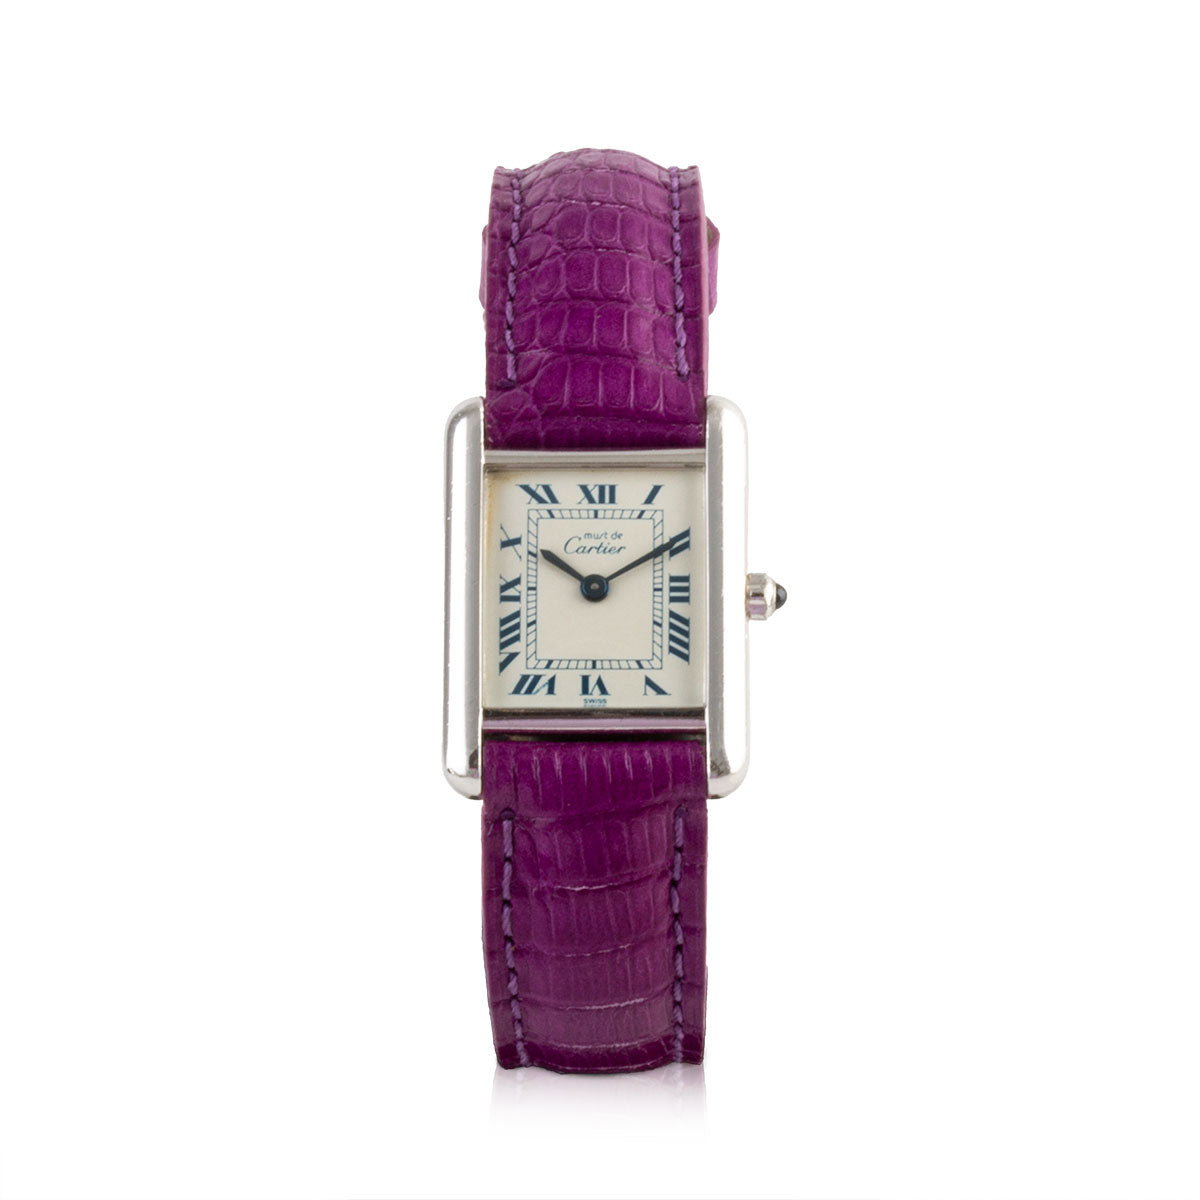 Second-hand watch - Cartier - Tank Must - 2400€